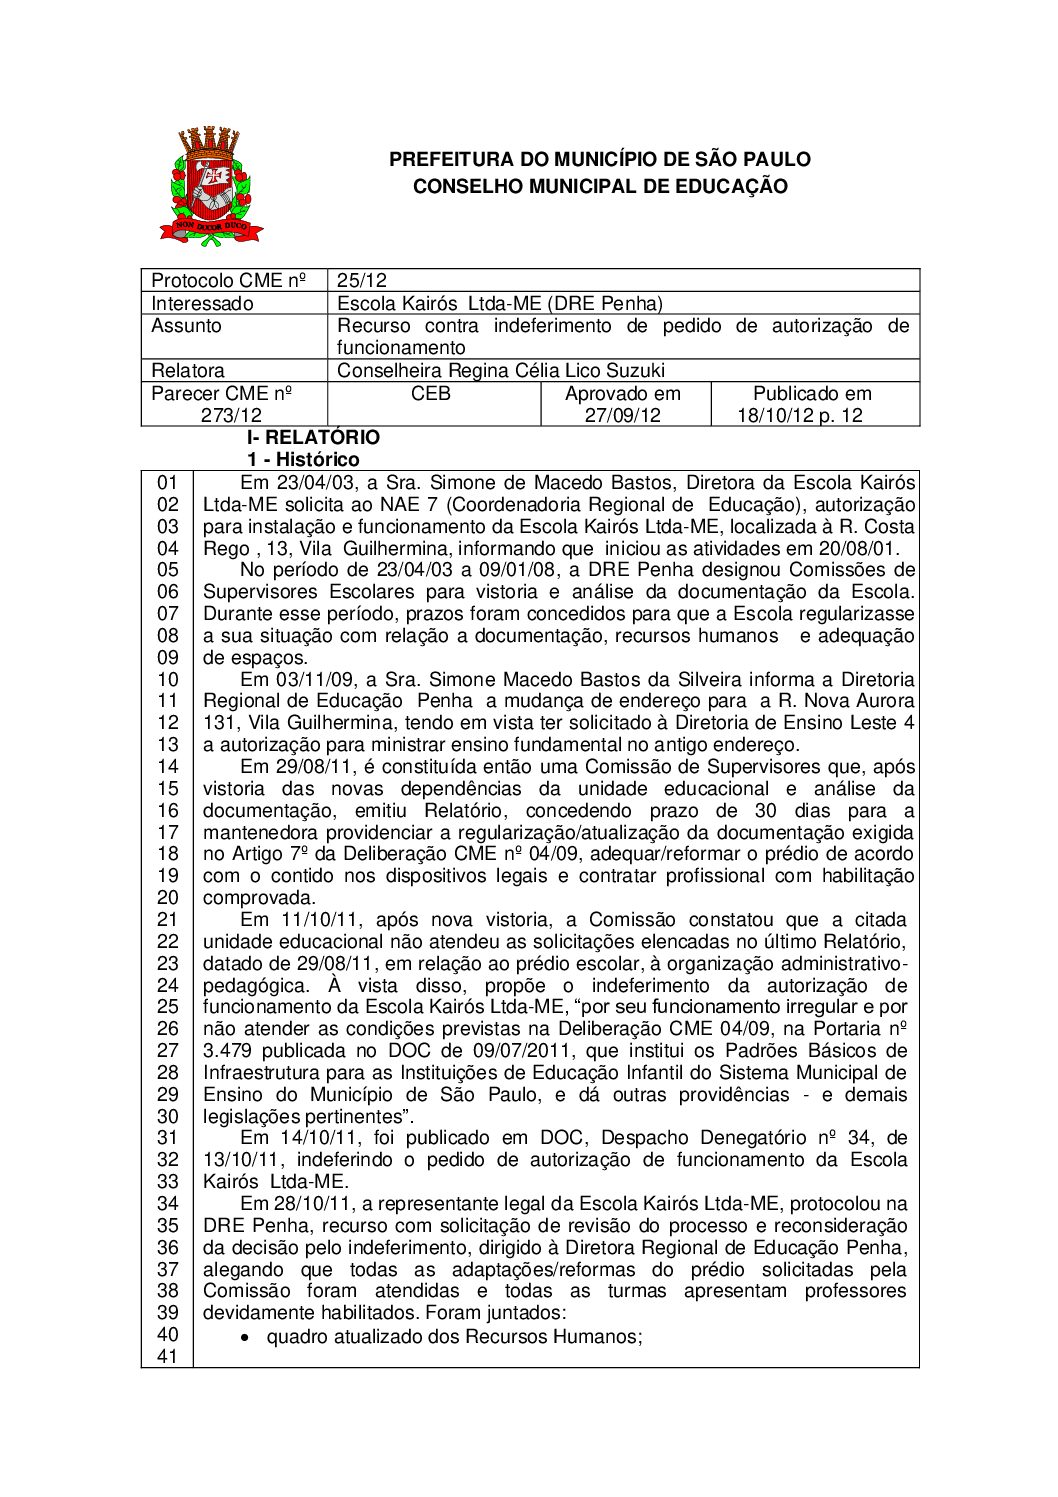 Parecer CME nº 273/2012 - Escola Kairós  Ltda ME (DRE Penha) - Recurso contra indeferimento de pedido de autorização de funcionamento